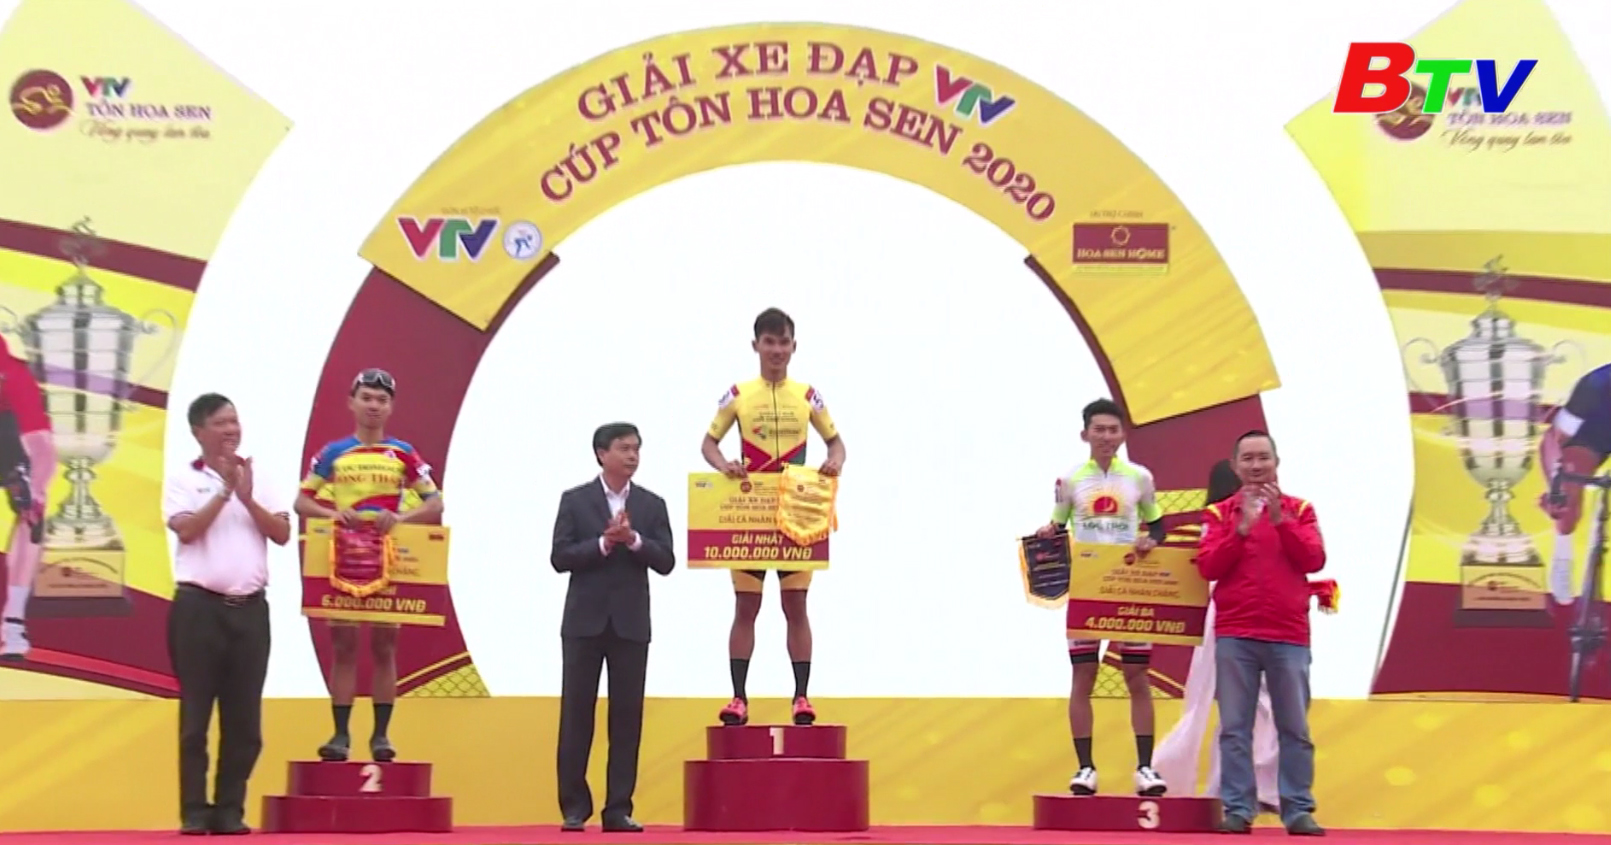 Kết quả Chặng 3 Giải xe đạp VTV Cúp Tôn Hoa Sen 2020